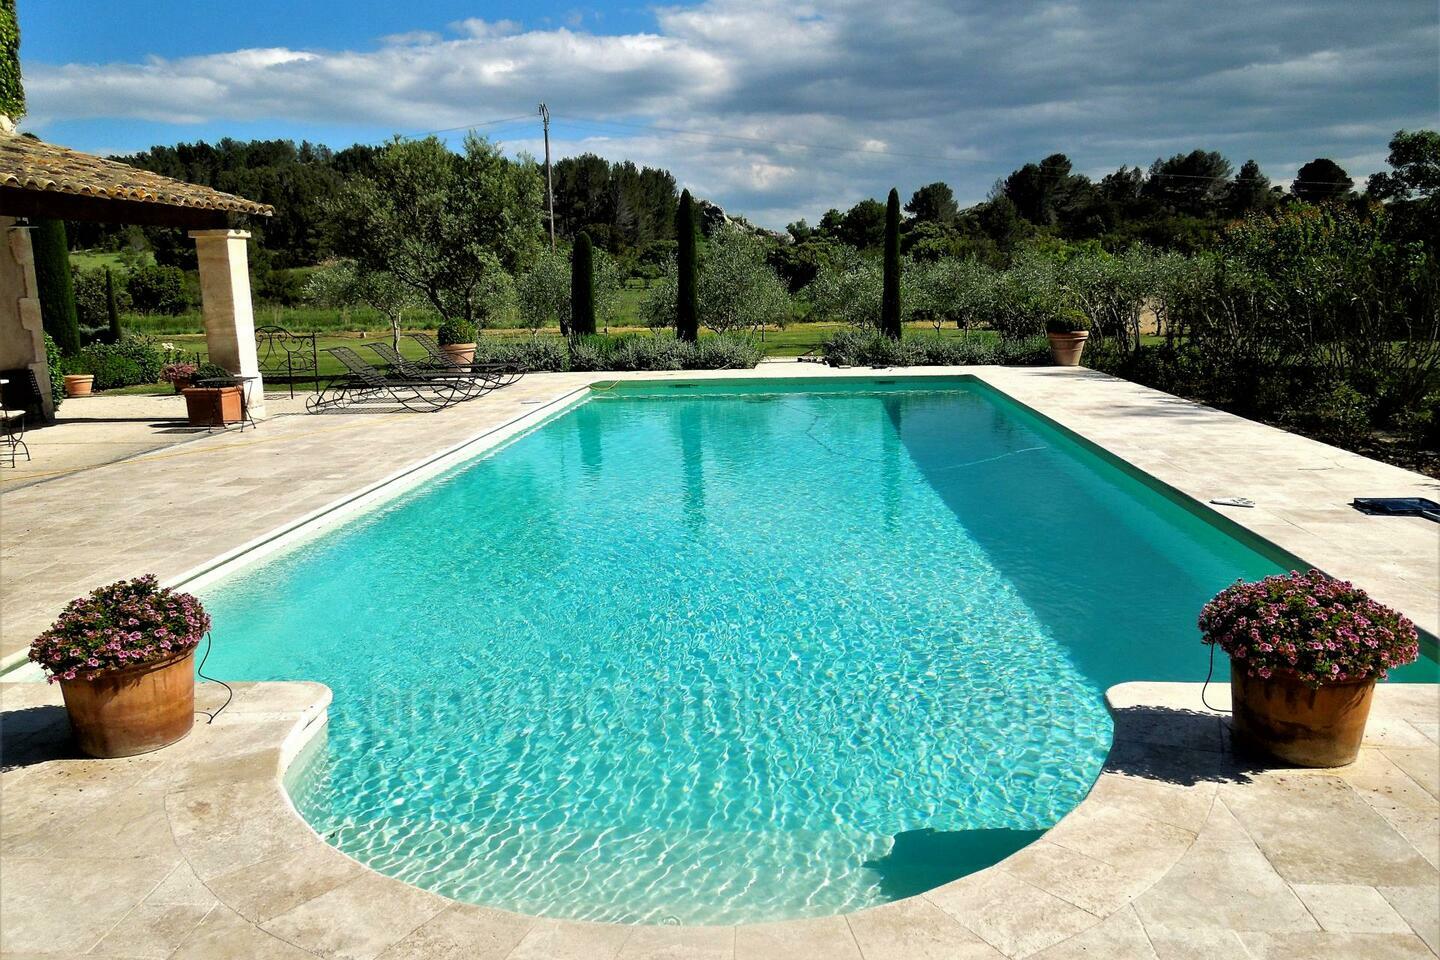 6 - Maison Paradou: Villa: Pool - Maison Paradou: 15m x 6m pool, always in the sun